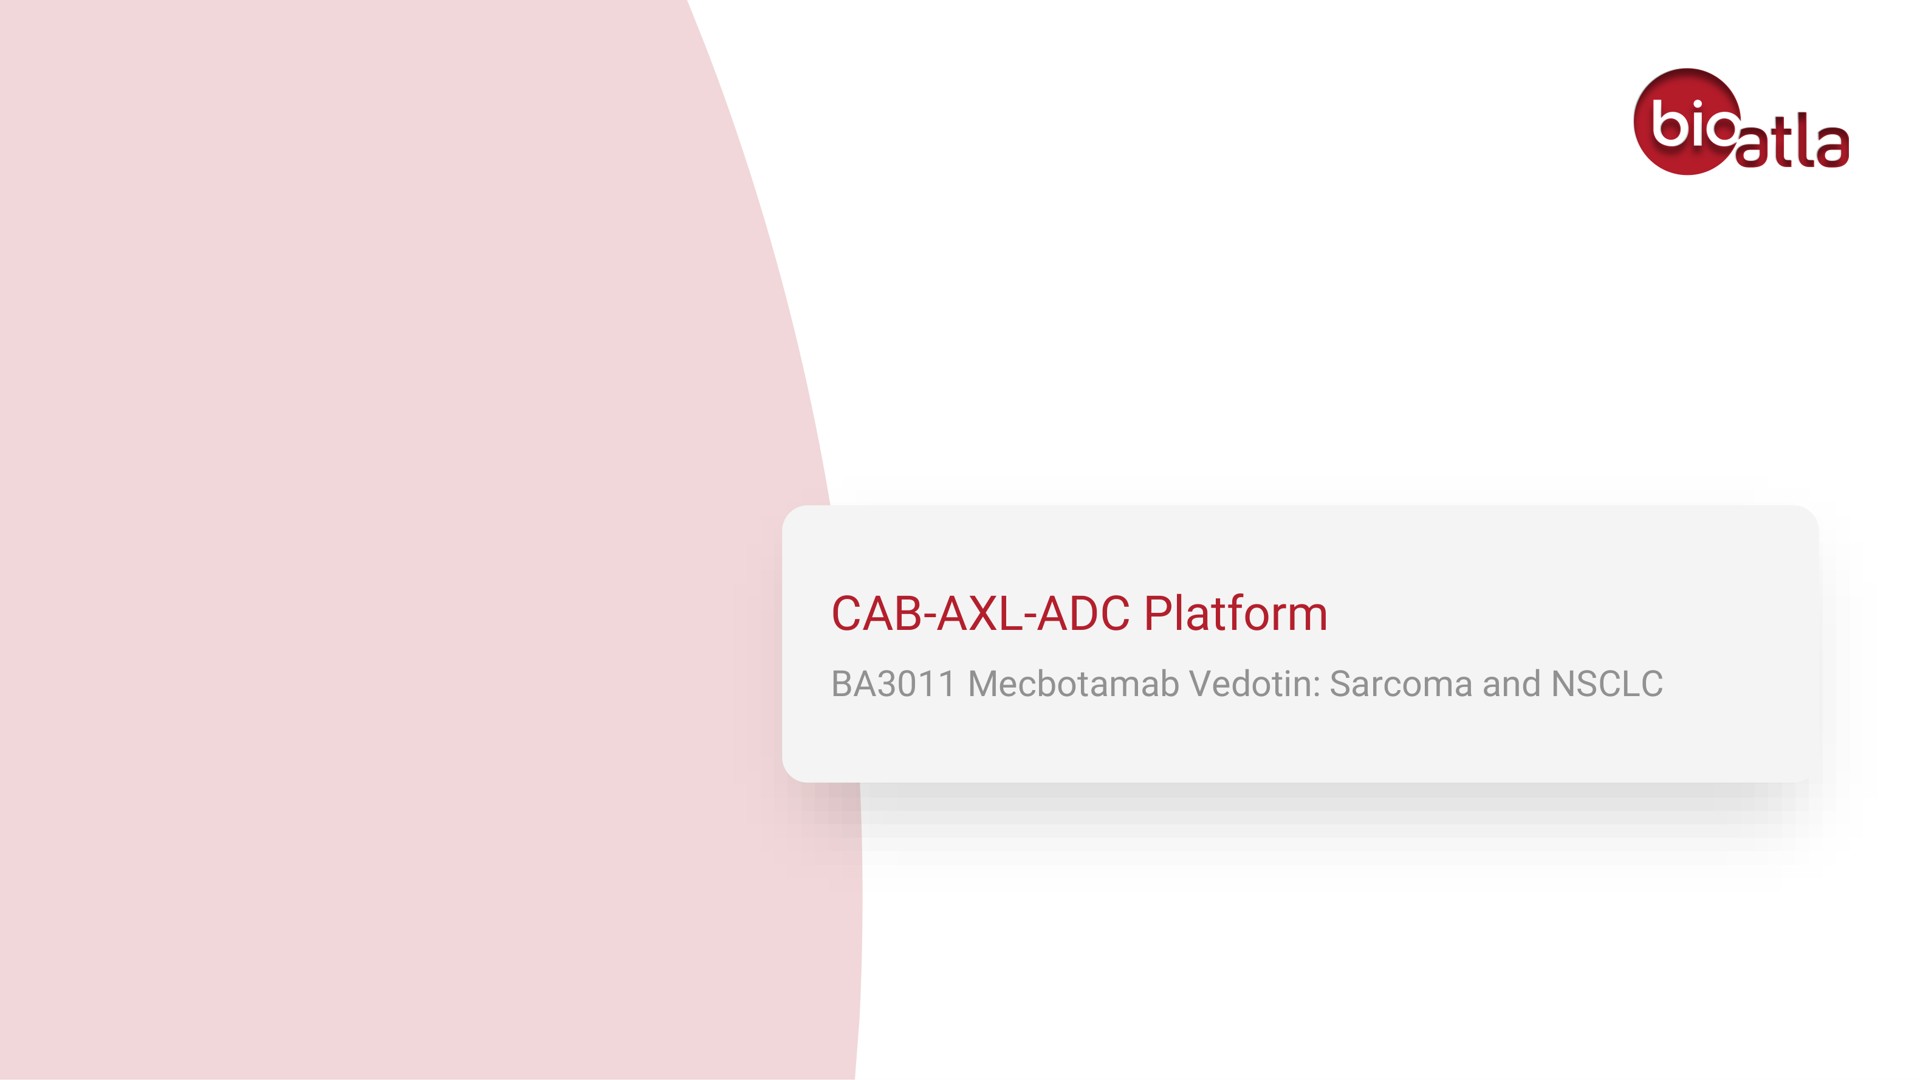 cab platform | BioAtla